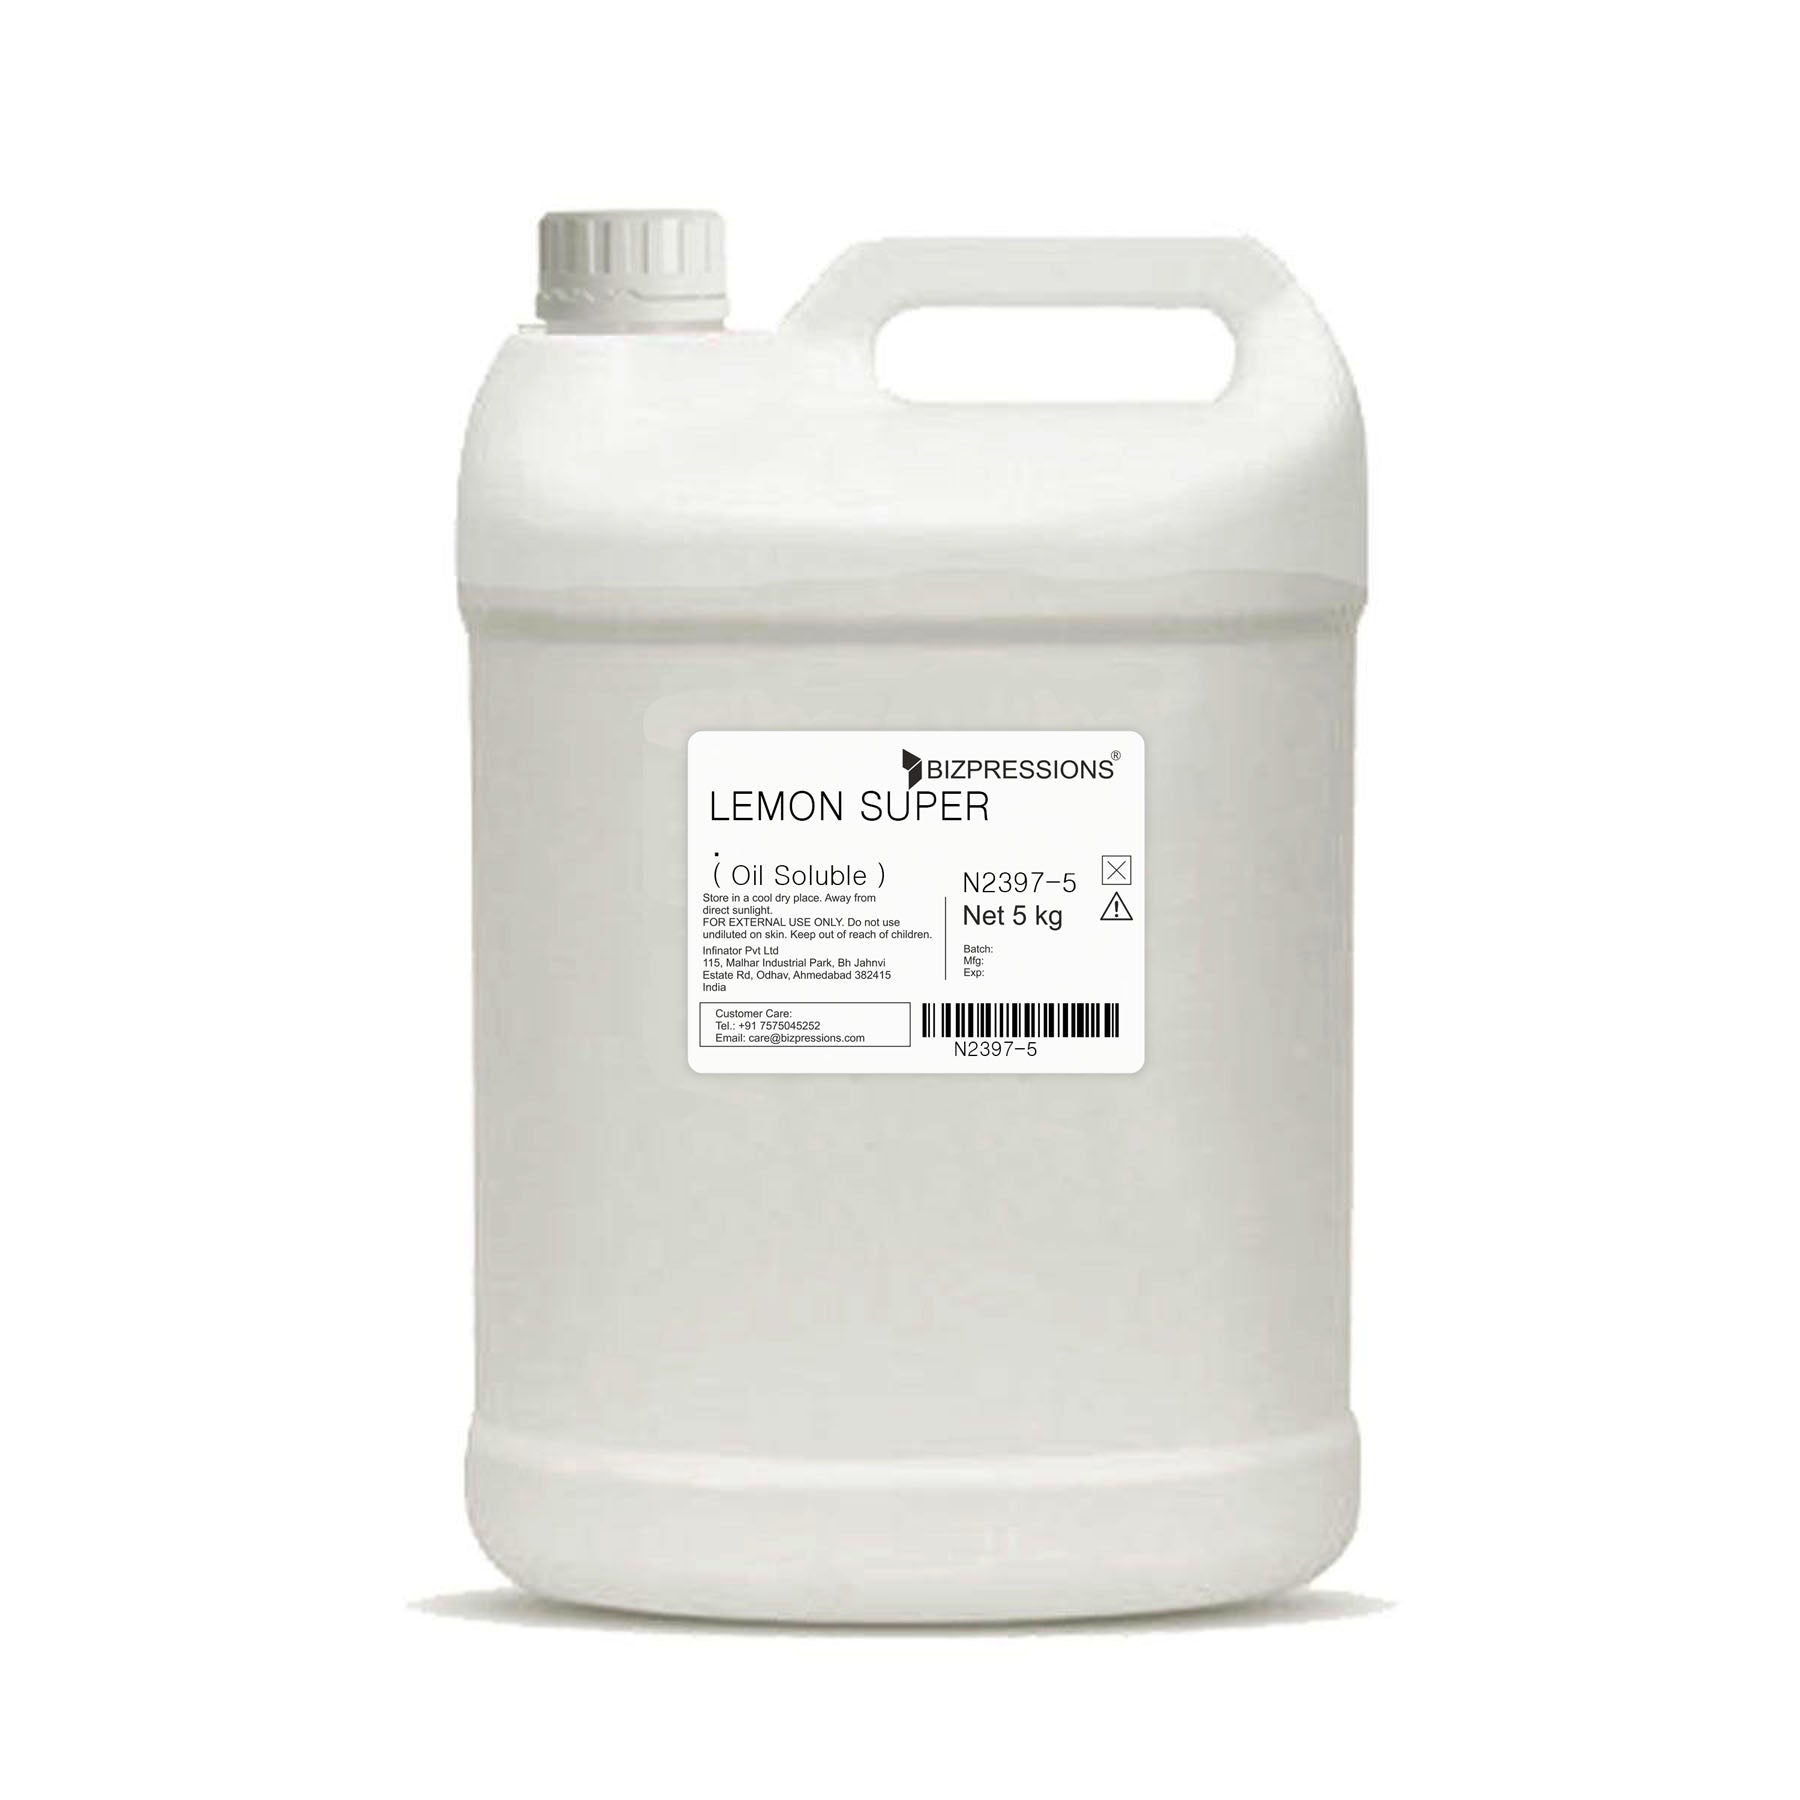 LEMON SUPER - Fragrance ( Oil Soluble ) - 5 kg